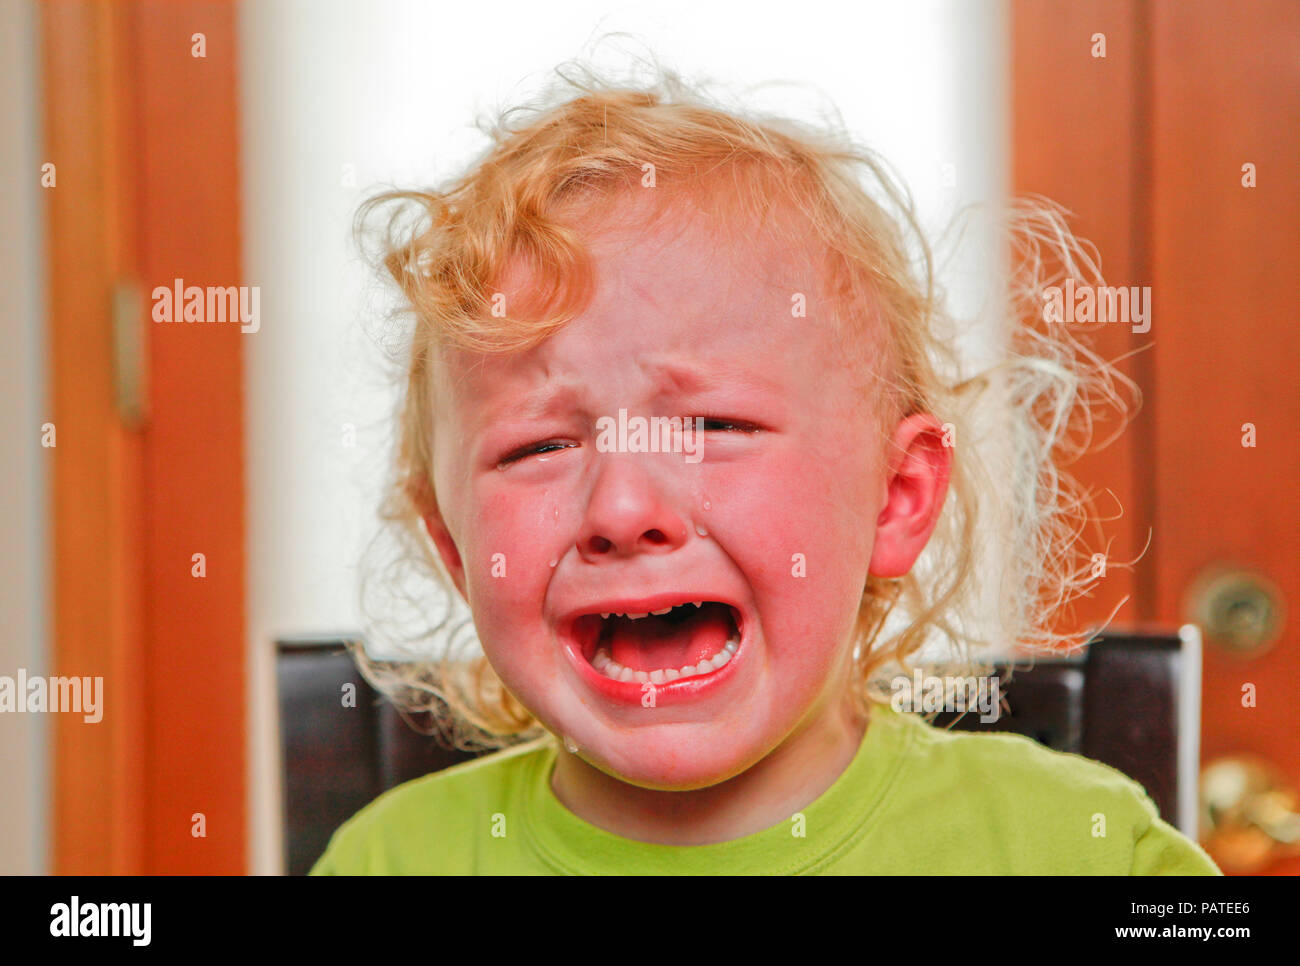 Child crying Stock Photo